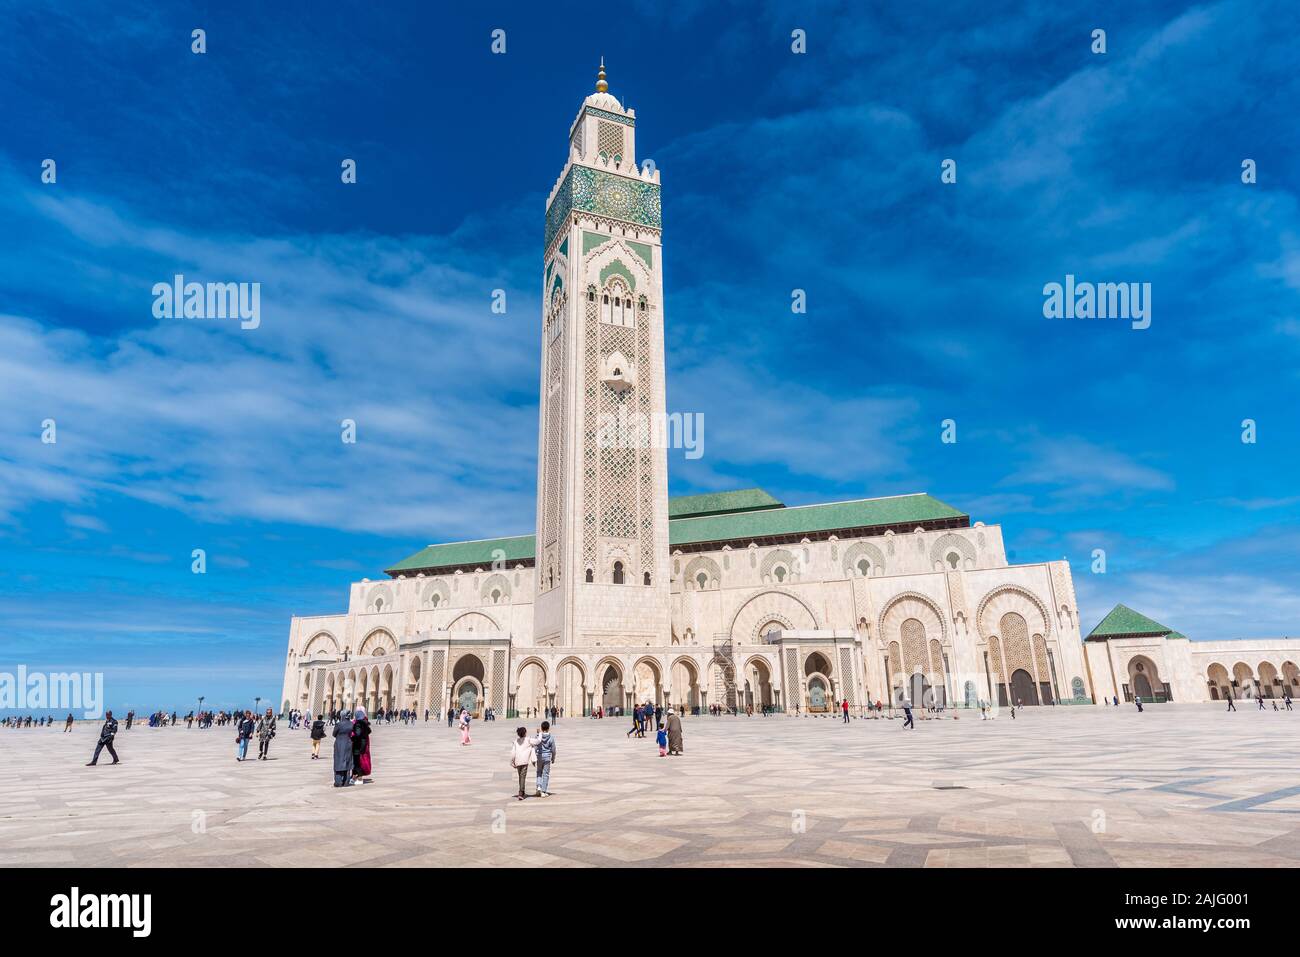 Casablanca, en Marruecos: Exterior de la Mezquita de Hassan II, la mezquita más grande de África, y la quinta más grande en el mundo. Su minarete es el más alto del mundo. Foto de stock